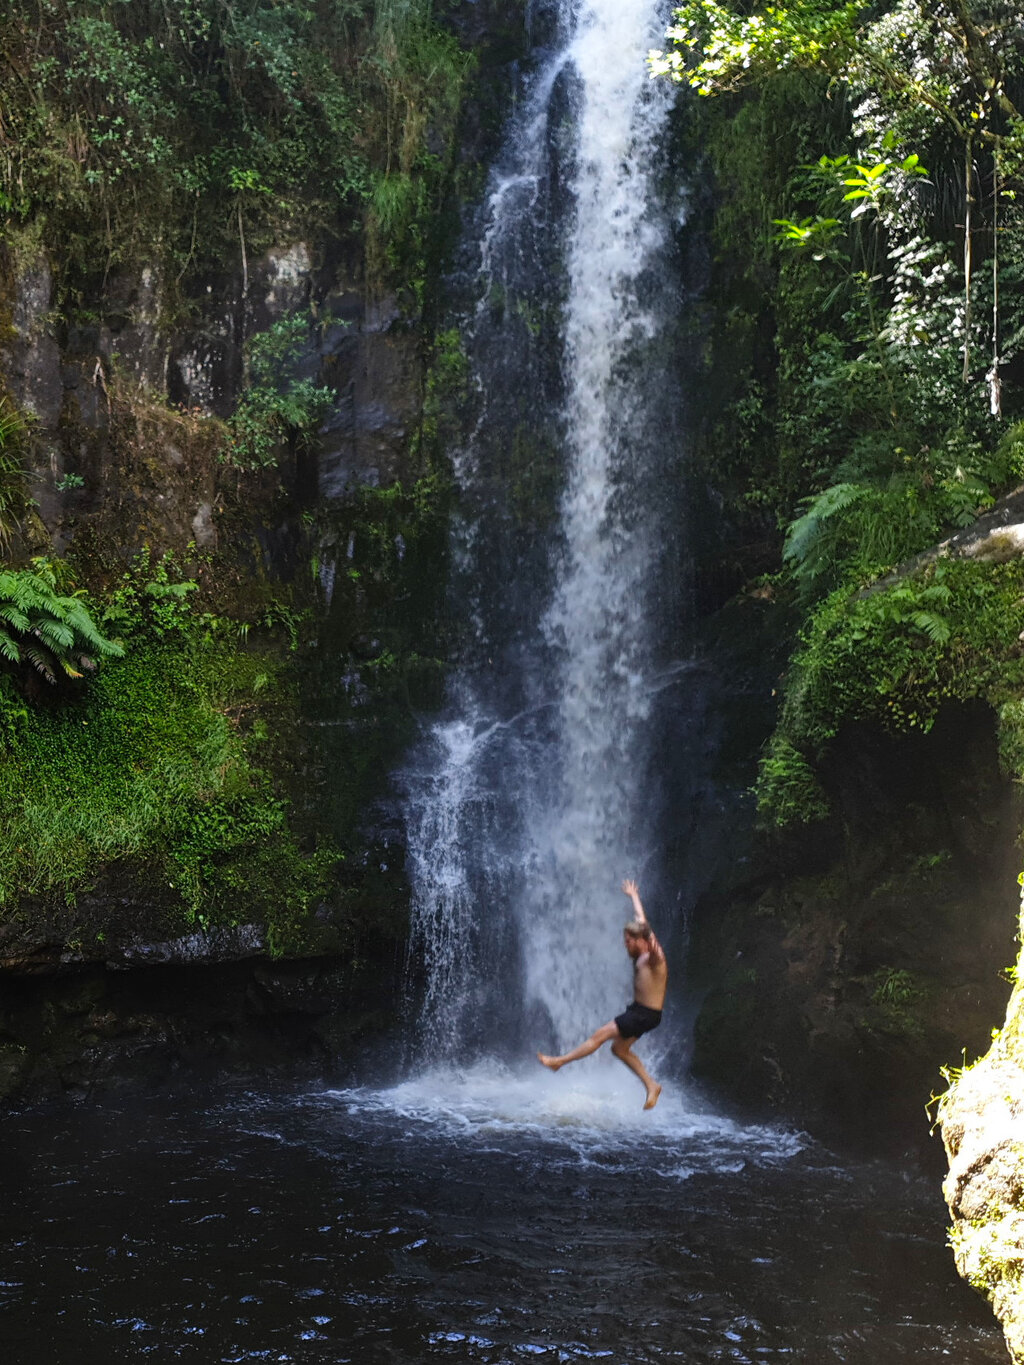 Auf dem Weg nach Pikowai haben wir uns mal wieder einen Wasserfall angesehen, dieser hatte ein tiefes Becken, in das man super hinein springen konnte.